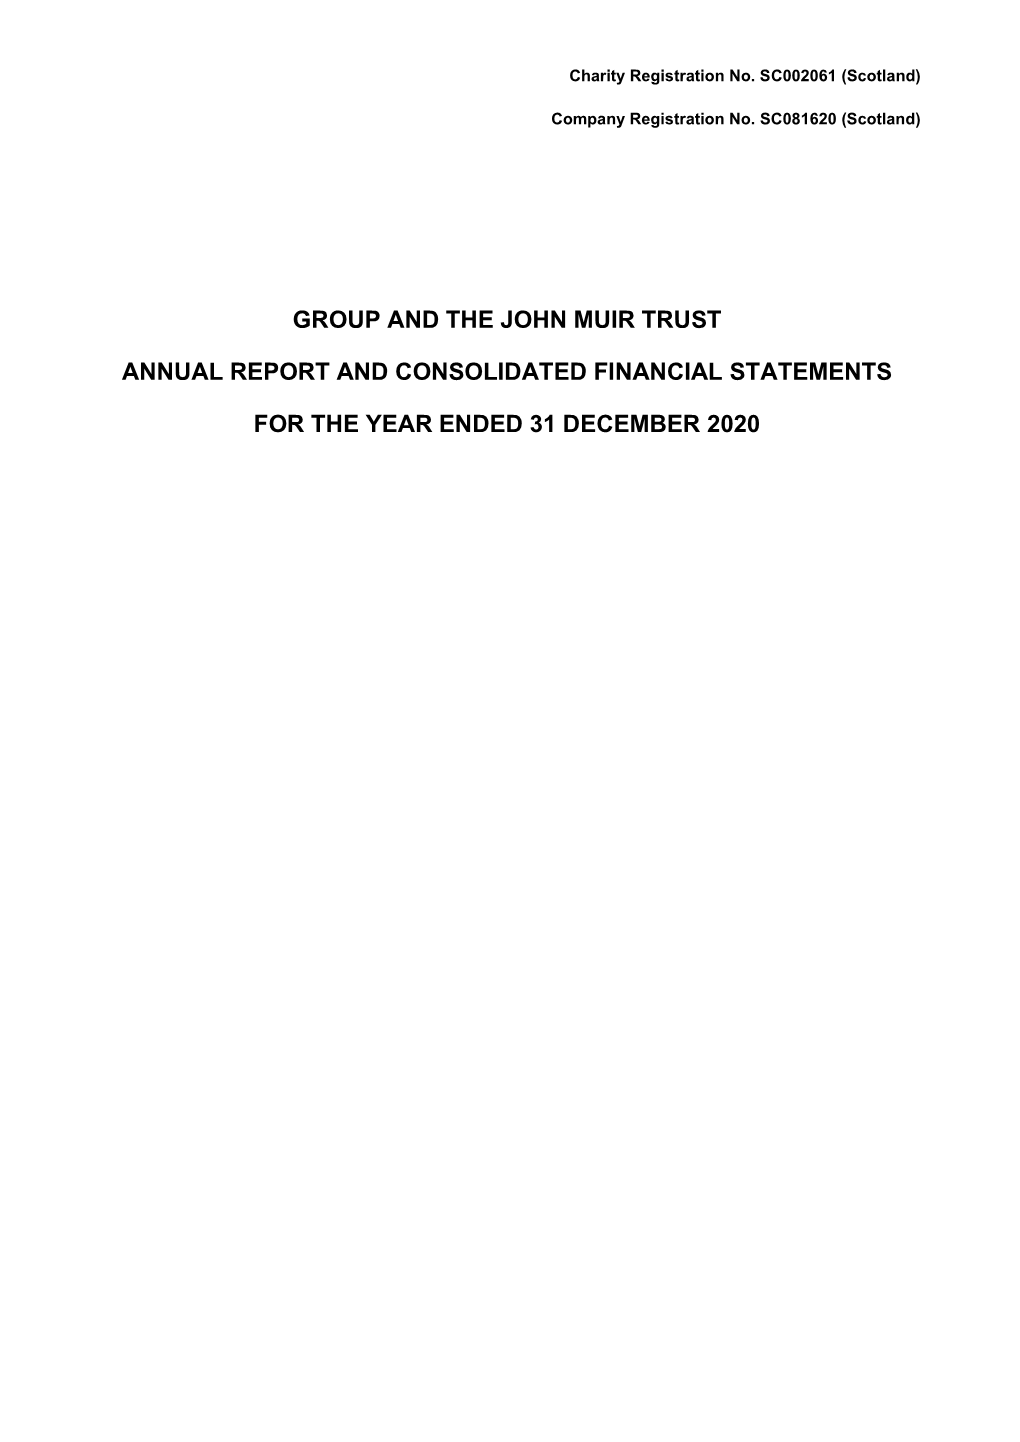 John Muir Trust Finance Report 2020